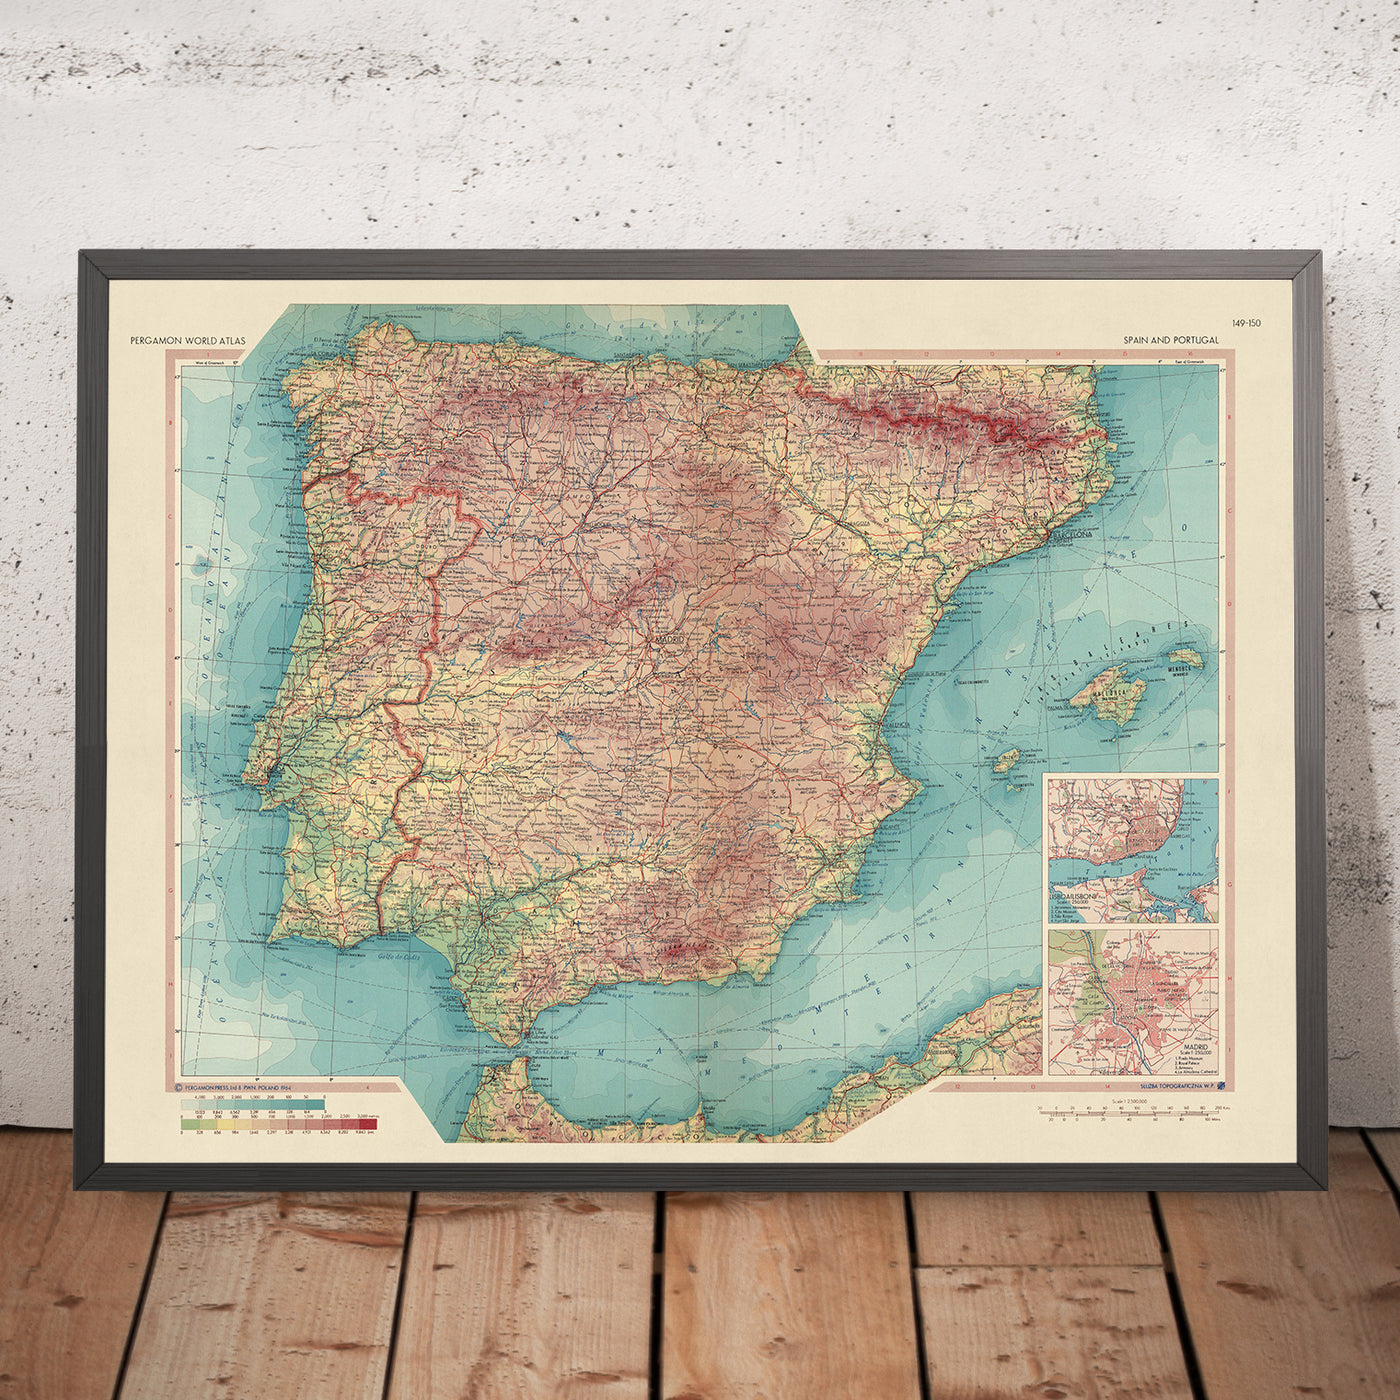 Mapa antiguo de España y Portugal, 1967: Madrid, Barcelona, Valencia, Sevilla, Lisboa